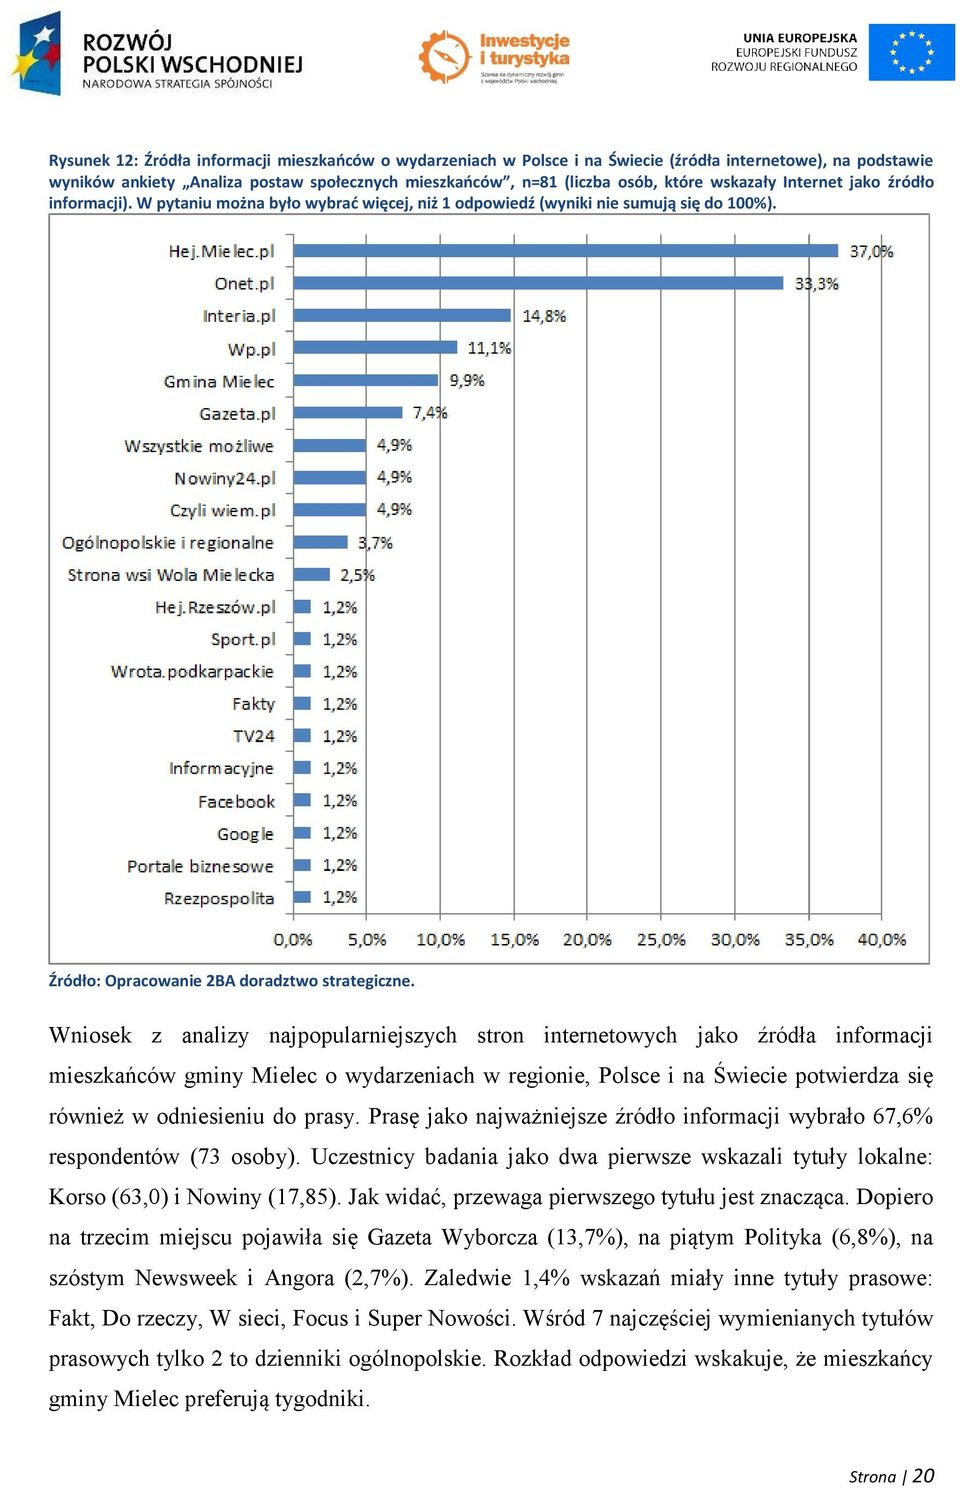 Wniosek z analizy najpopularniejszych stron internetowych jako źródła informacji mieszkańców gminy Mielec o wydarzeniach w regionie, Polsce i na Świecie potwierdza się również w odniesieniu do prasy.